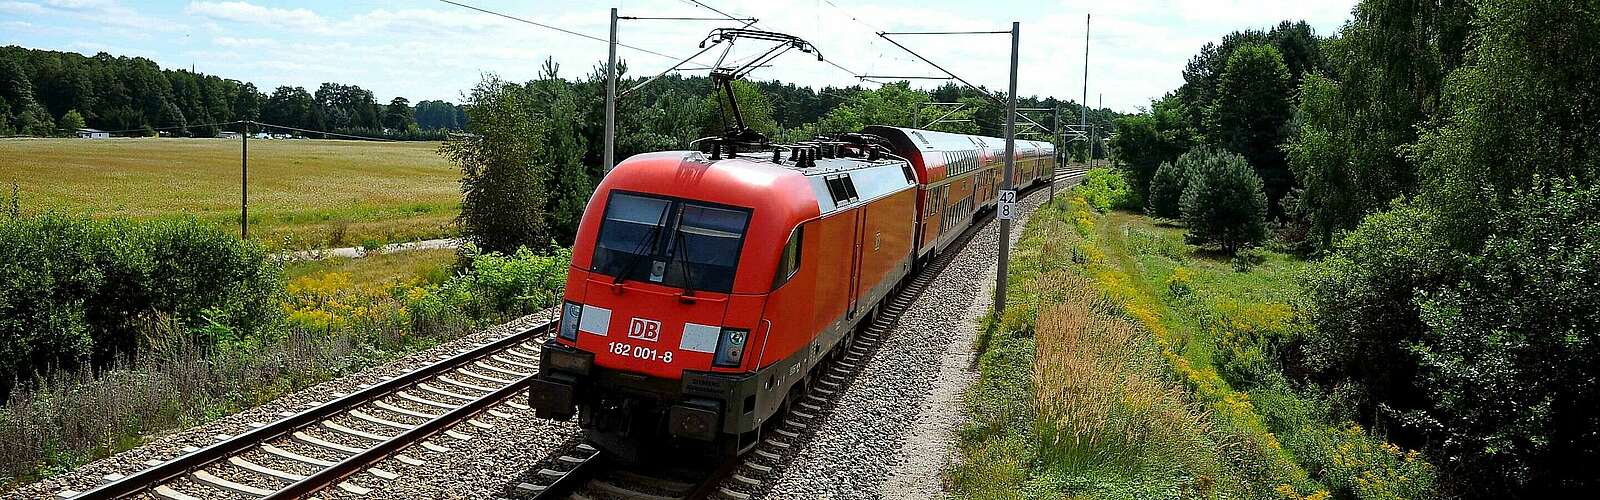 Regionalexpress von DB Regio Nordost,
        
    

        Foto: Fotograf / Lizenz - Media Import/Jet-Foto Kranert